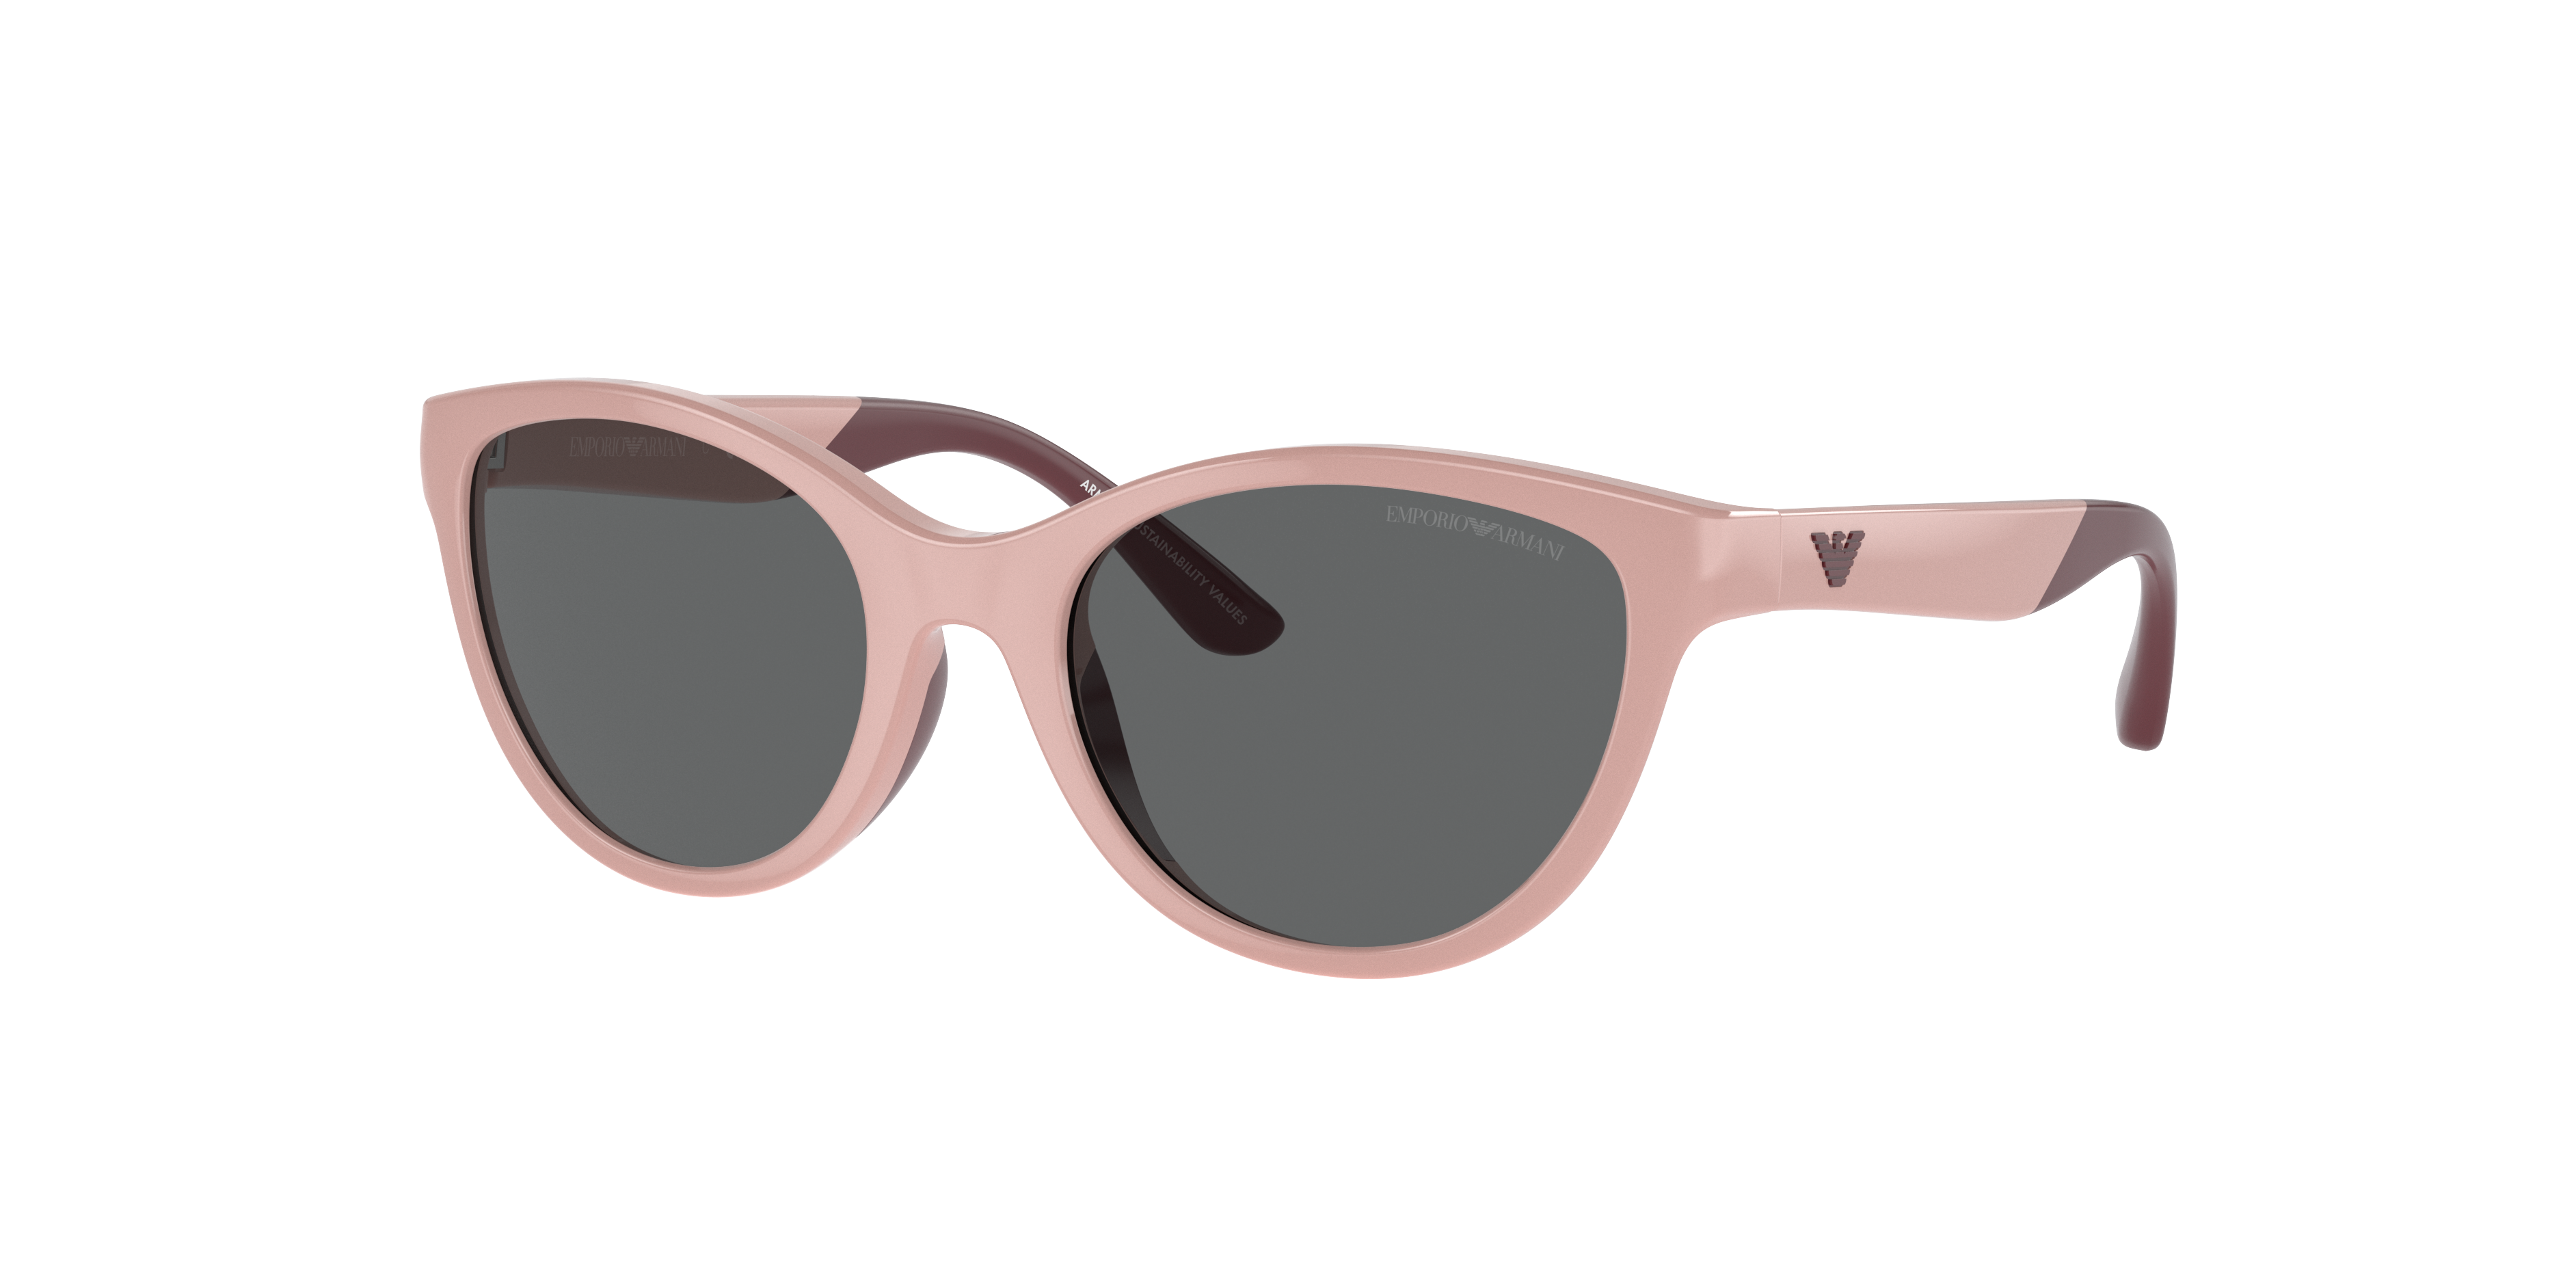 Consulte nosso catálogo de Óculos de Sol Emporio Armani Eyewear com diversos modelos e preços para sua escolha.